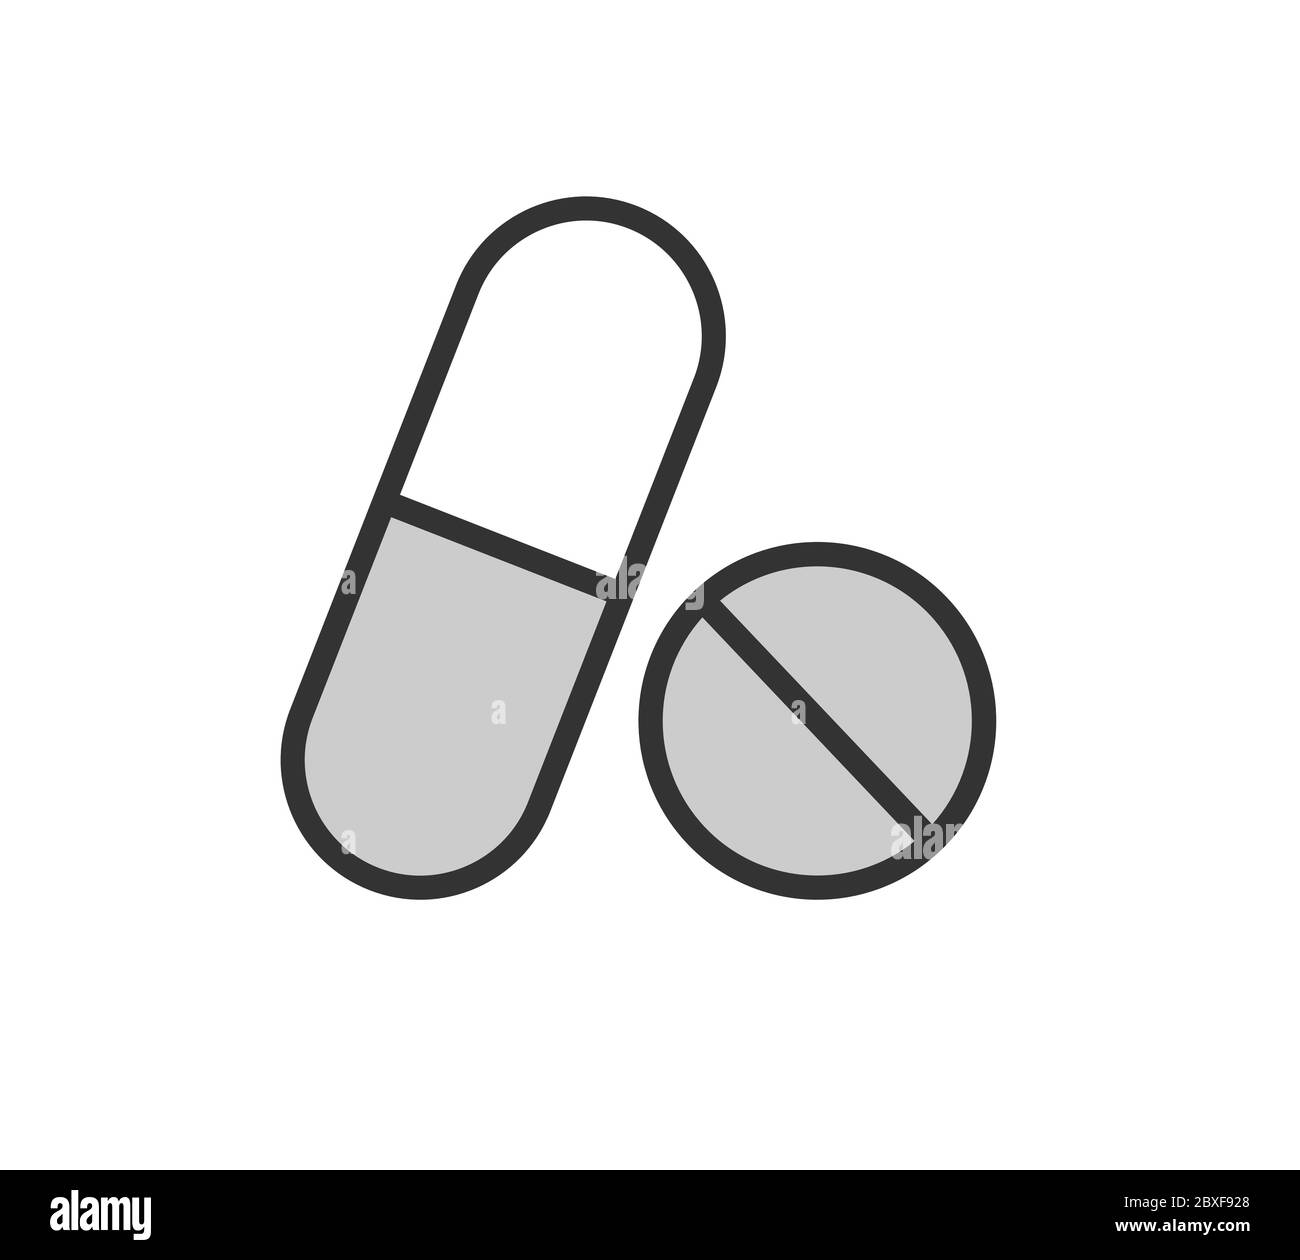 Illustrazione di pillola medica e di Tablet Vector. Illustrazione Vettoriale